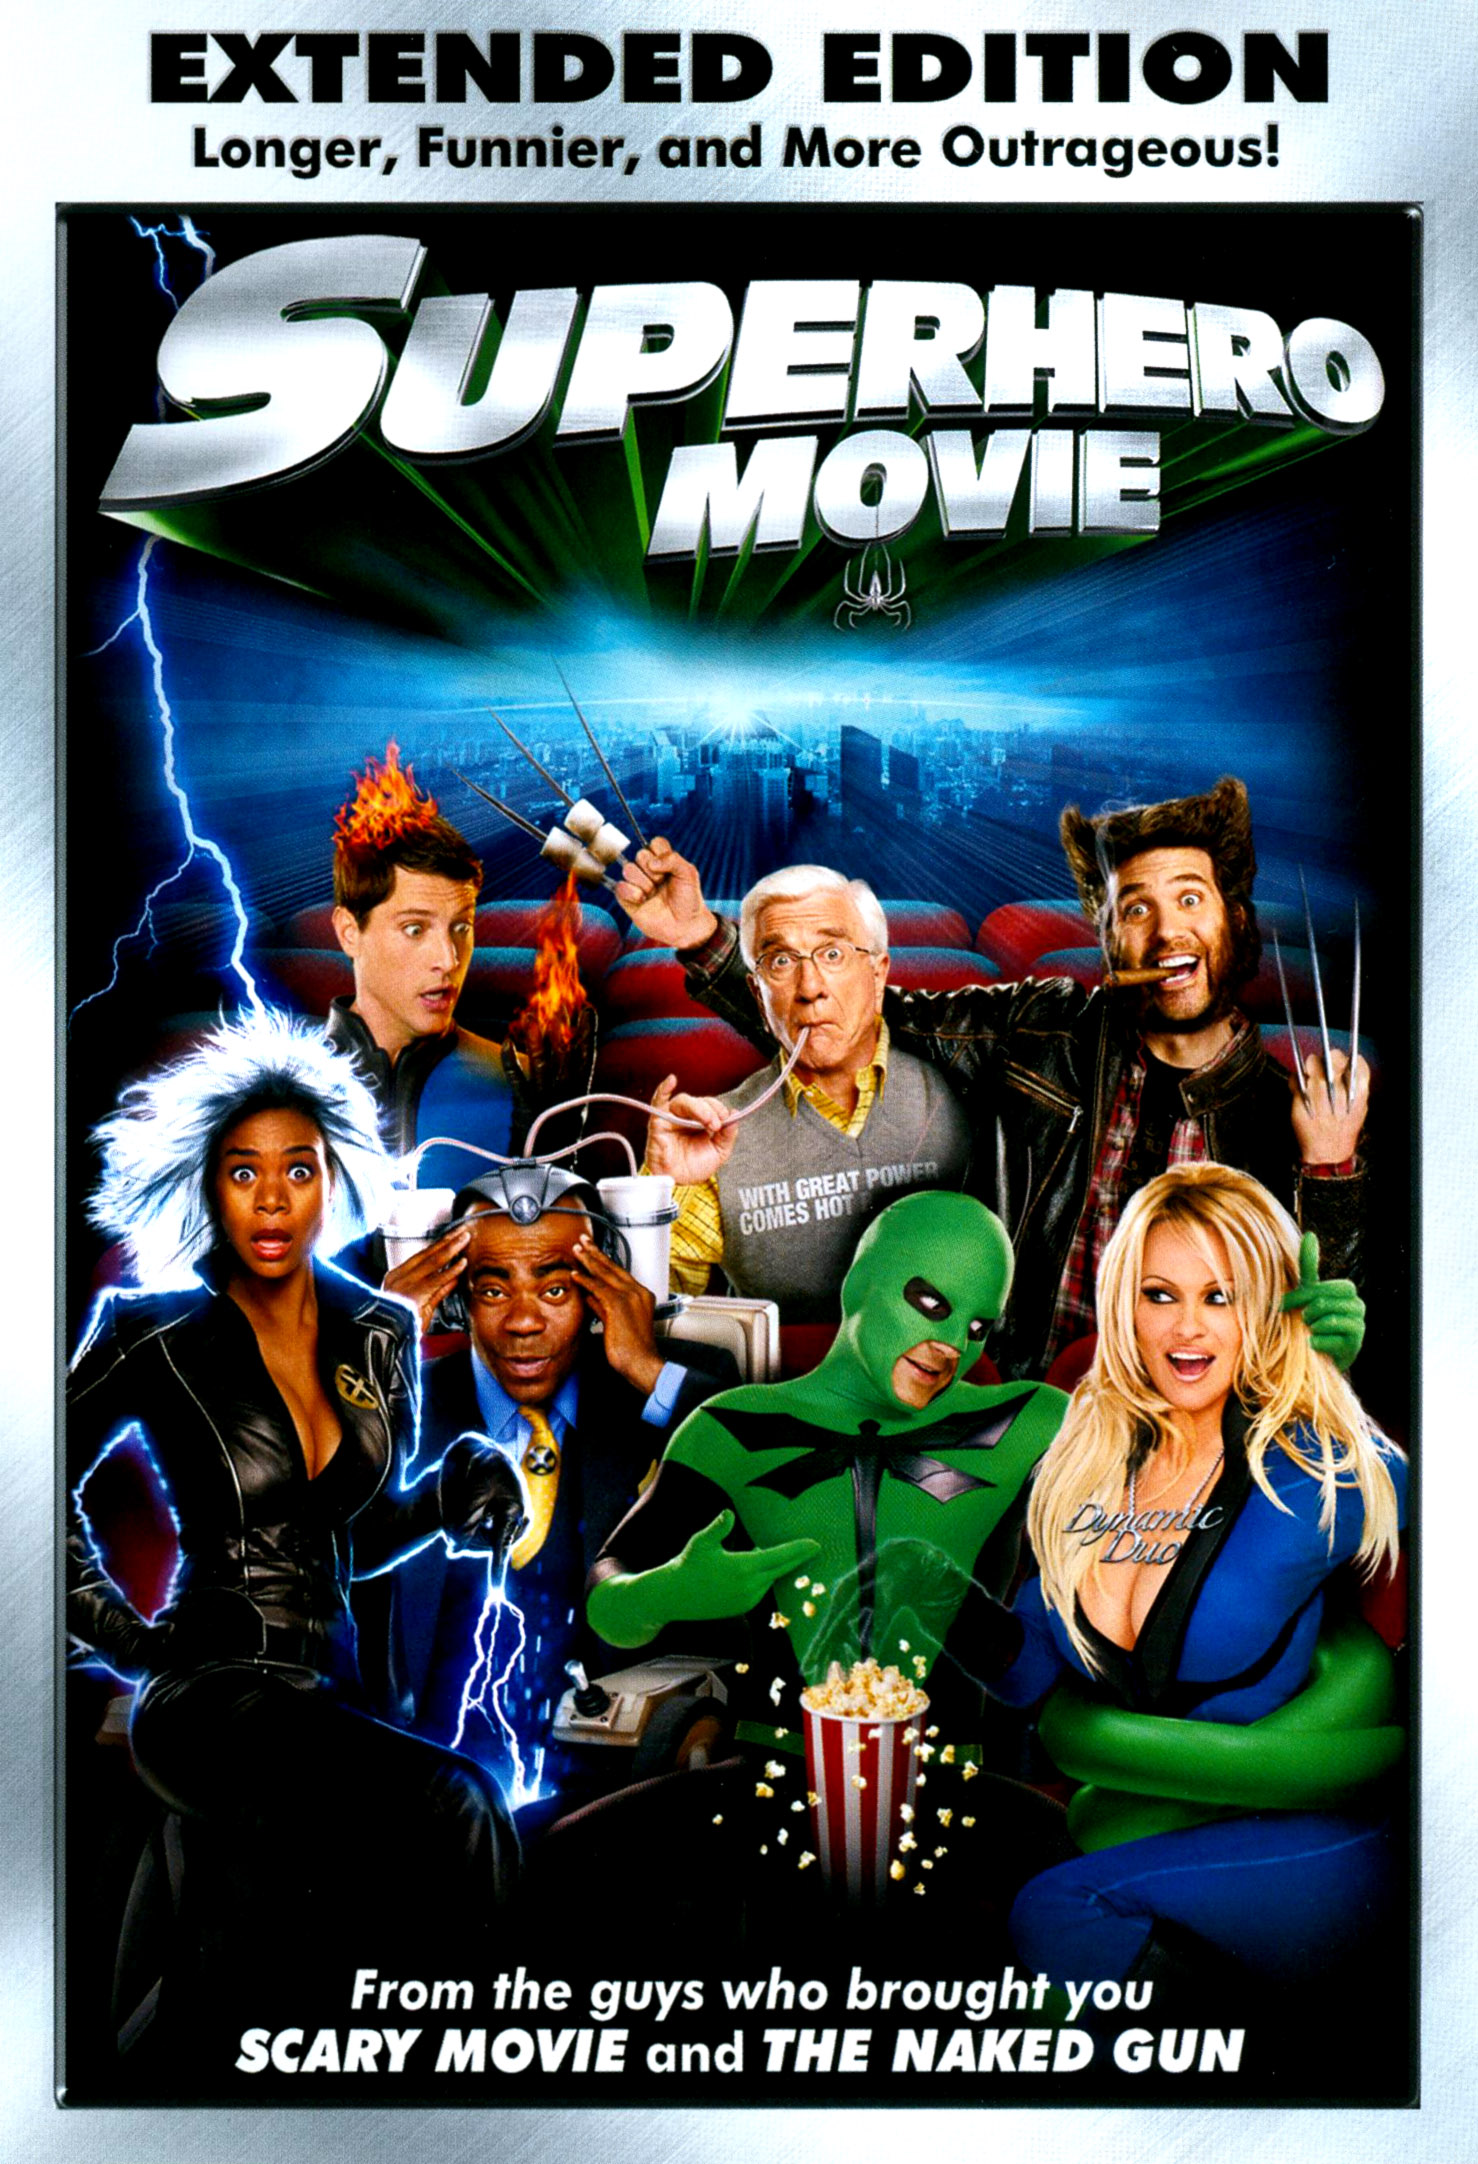 superhero movie 2008 dvd